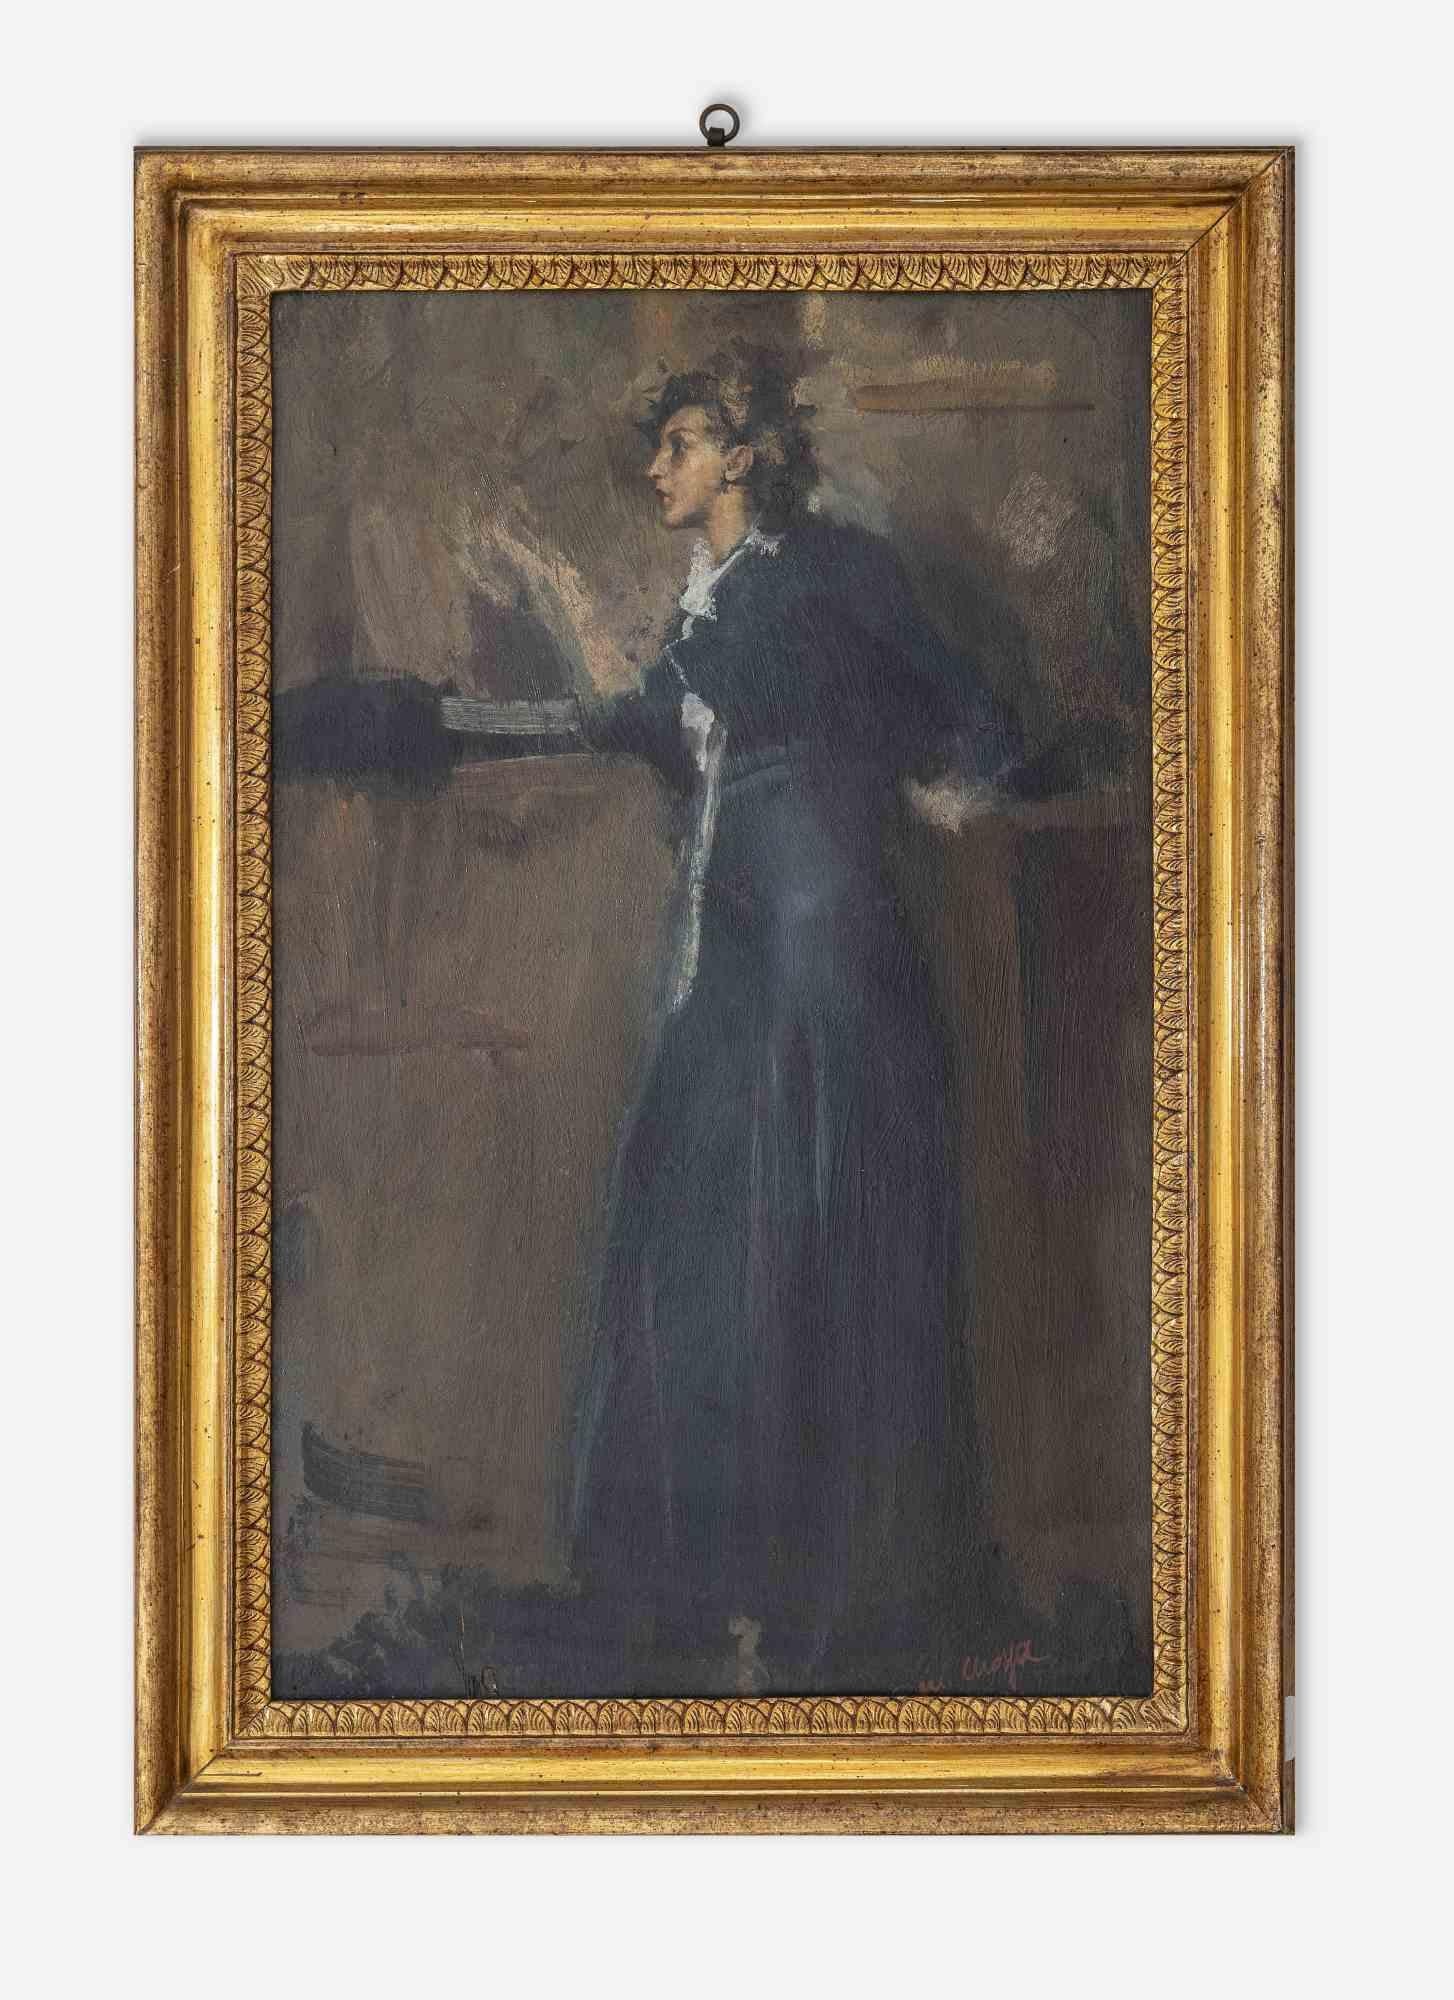 Jeune femme pensive est une œuvre d'art moderne originale réalisée par l'artiste Giovanni Maria Mossa (1892-1973) au début du XXe siècle.

Peinture à l'huile de couleurs mélangées sur carton.

Signé à la main par l'artiste dans la marge inférieure